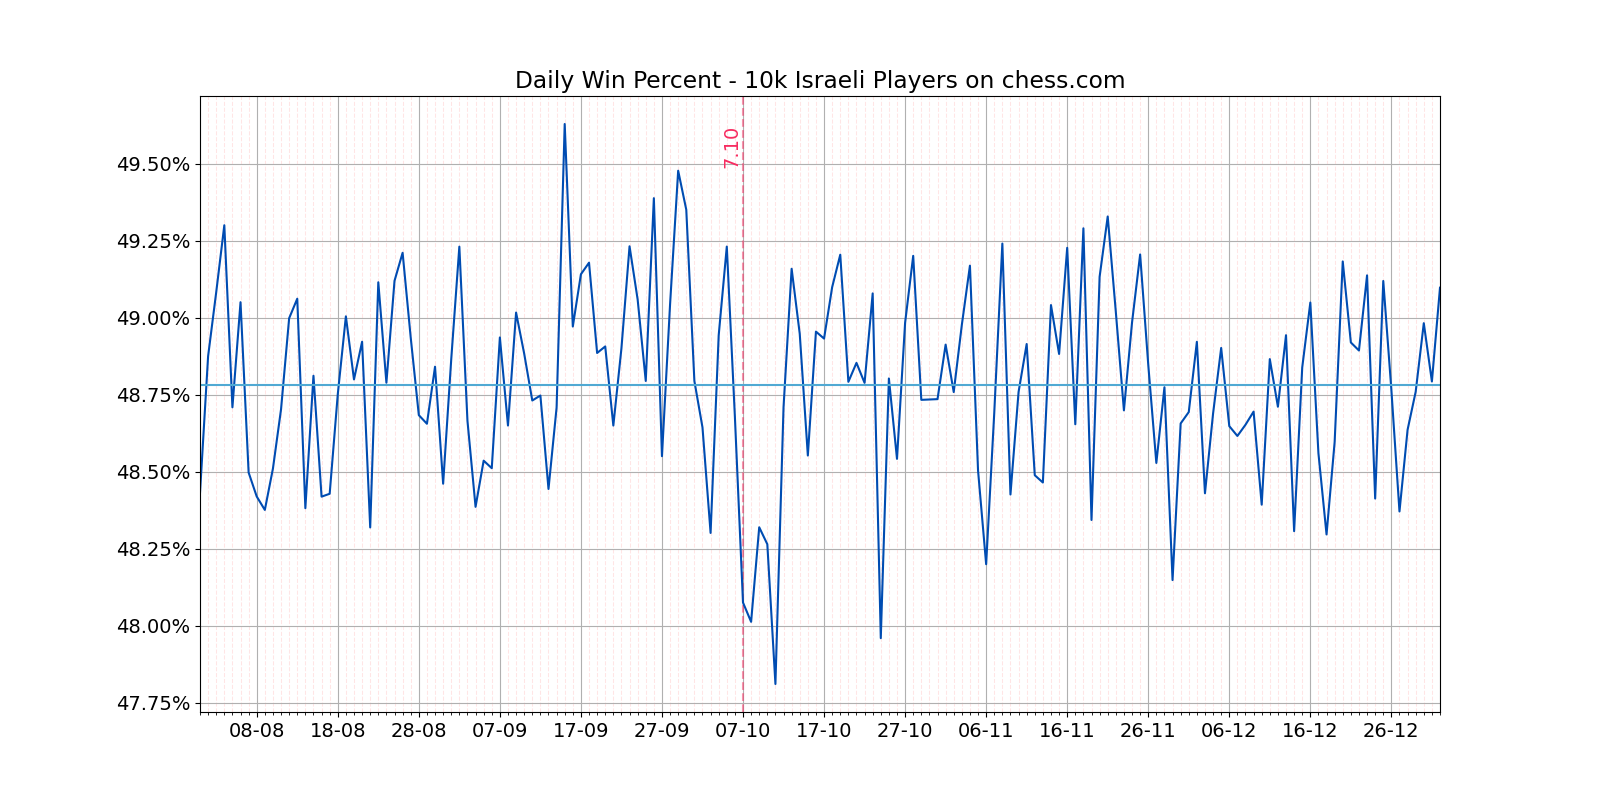 השפעת 7.10 על תיפקוד של ישראלים במשחקי שחמט באינטרנט